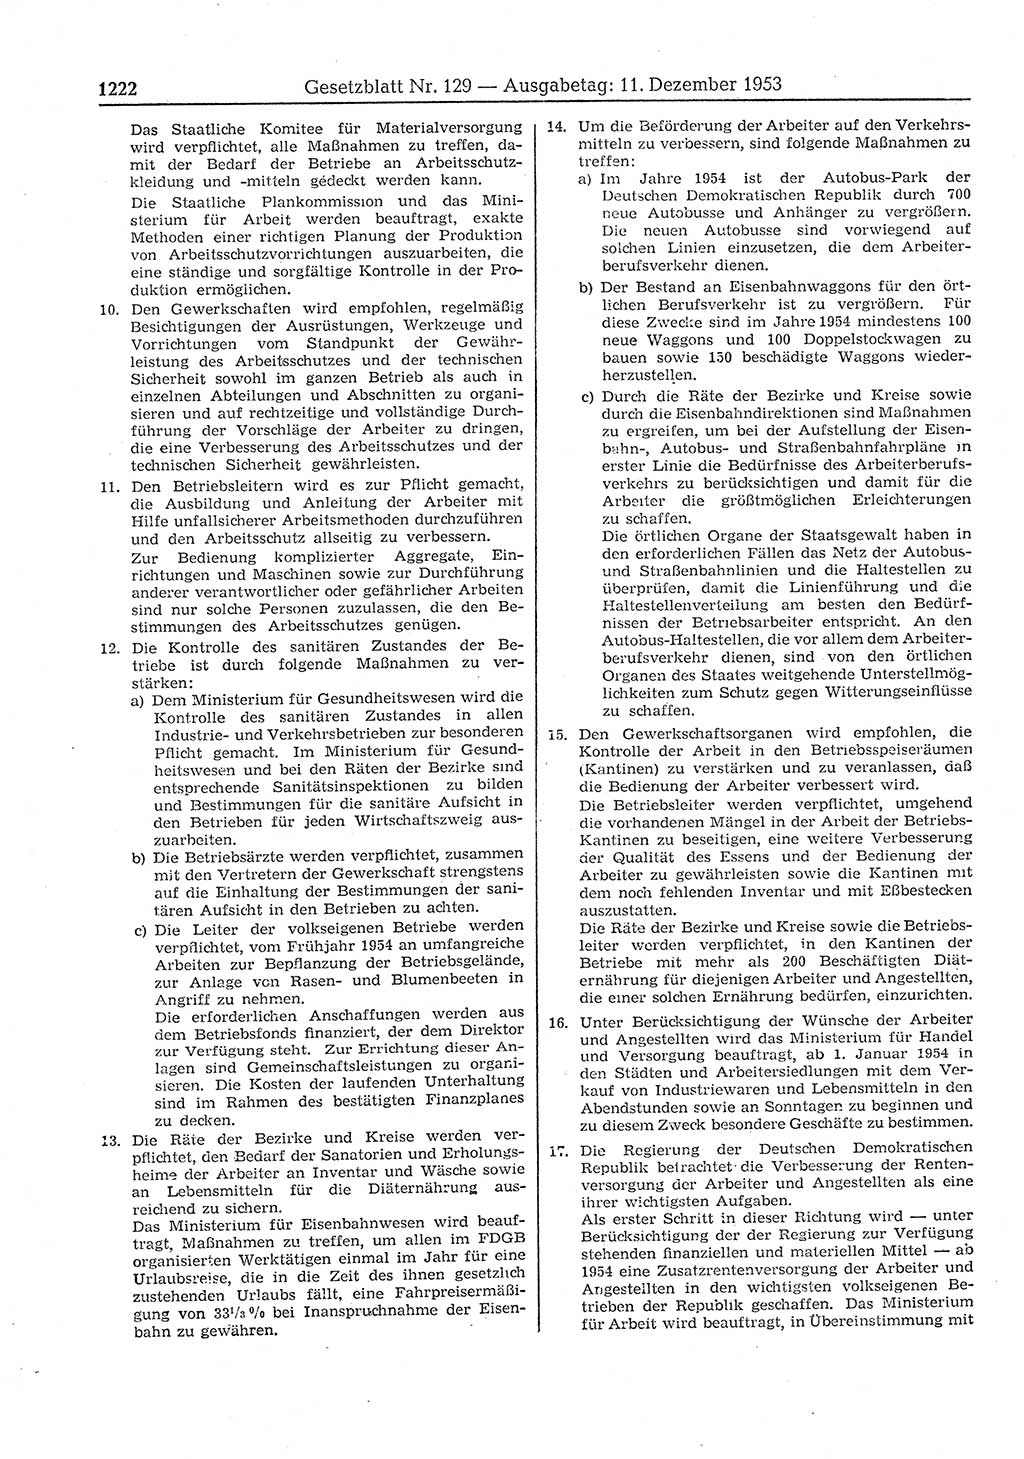 Gesetzblatt (GBl.) der Deutschen Demokratischen Republik (DDR) 1953, Seite 1222 (GBl. DDR 1953, S. 1222)